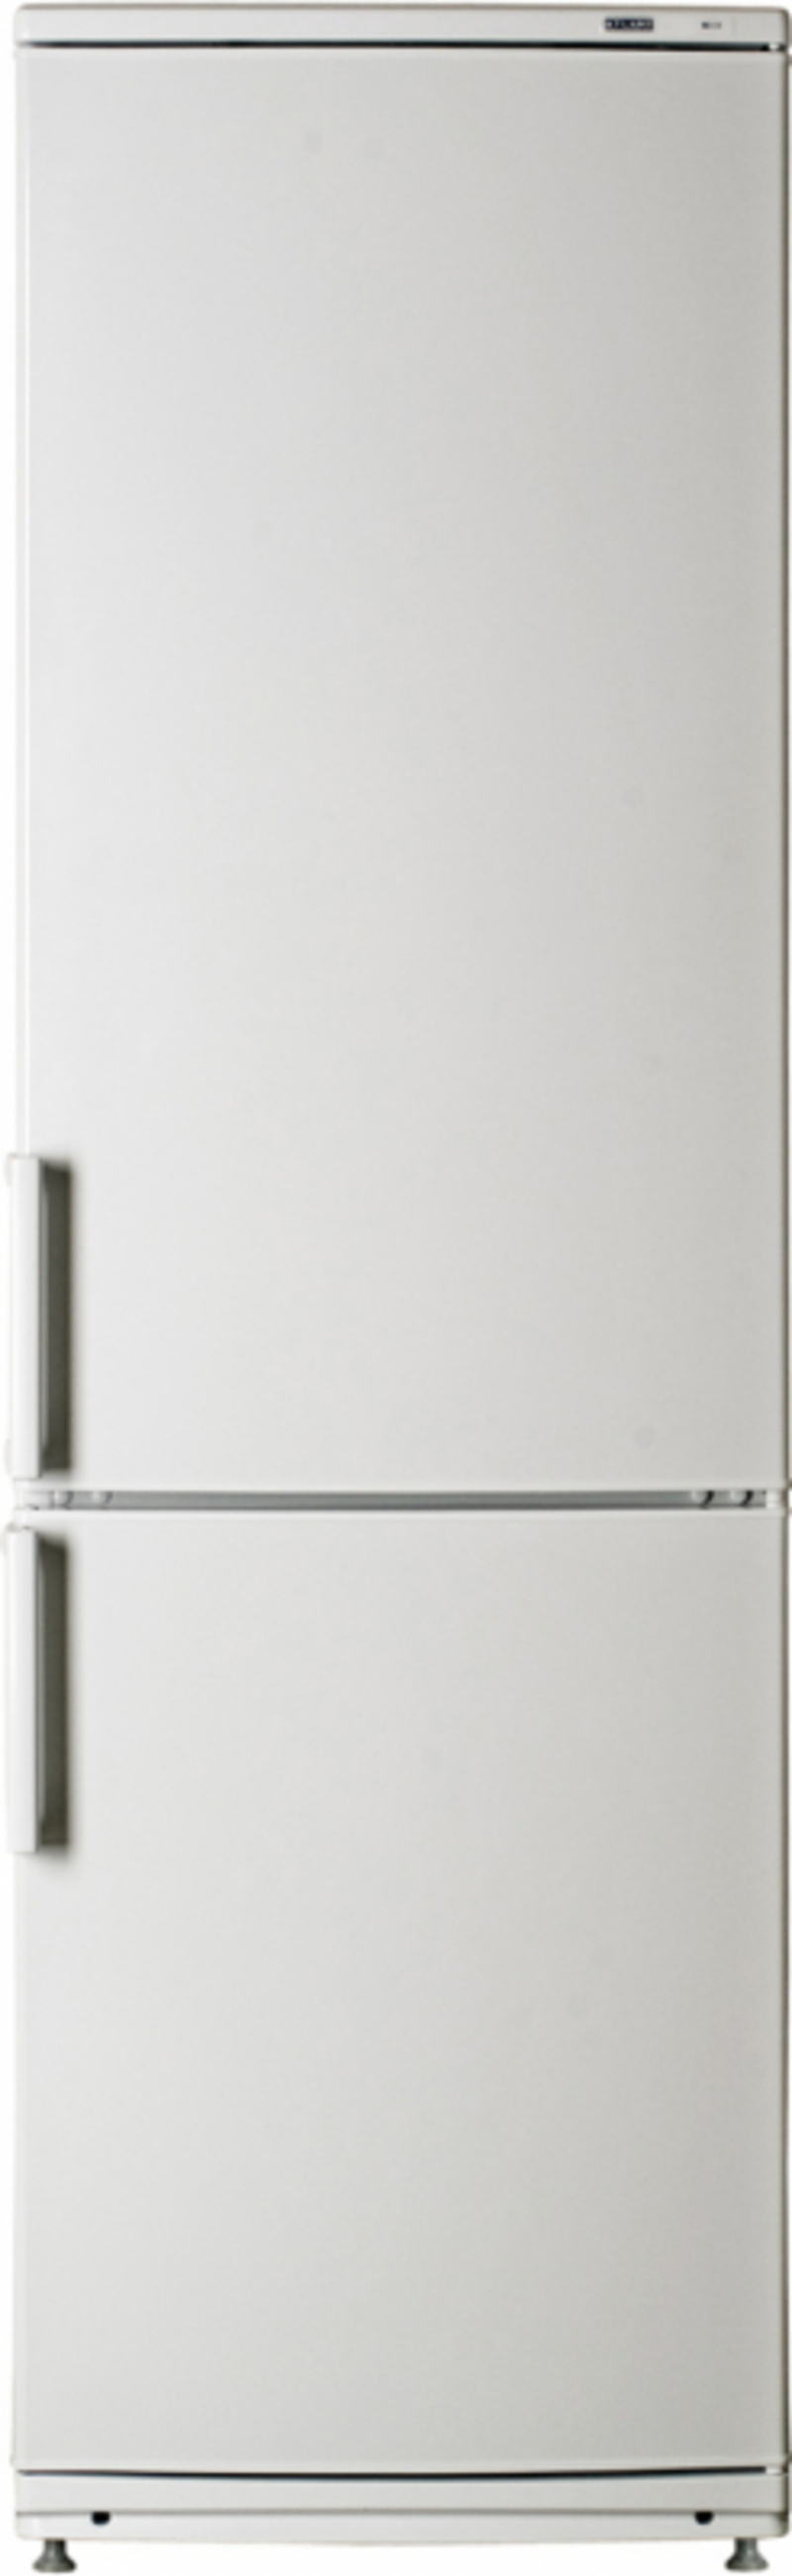 90469230 Отдельностоящий холодильник Х-КХМ-6024-031 60x195 см цвет белый STLM-0239115 АТЛАНТ